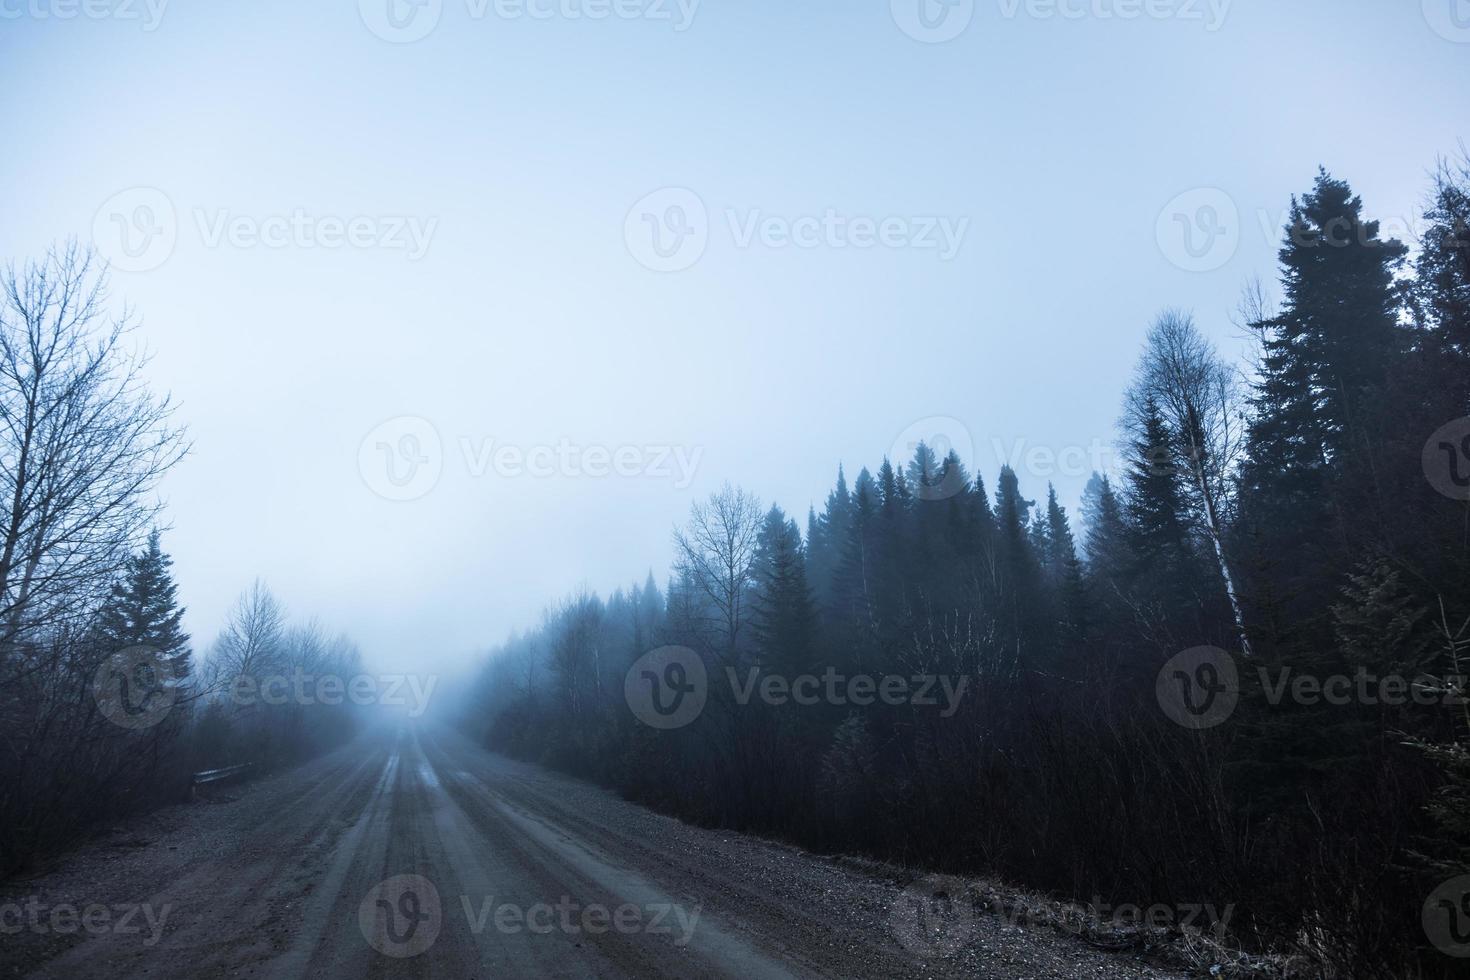 Nevoeiro assustador e má visibilidade em estrada rural na floresta foto